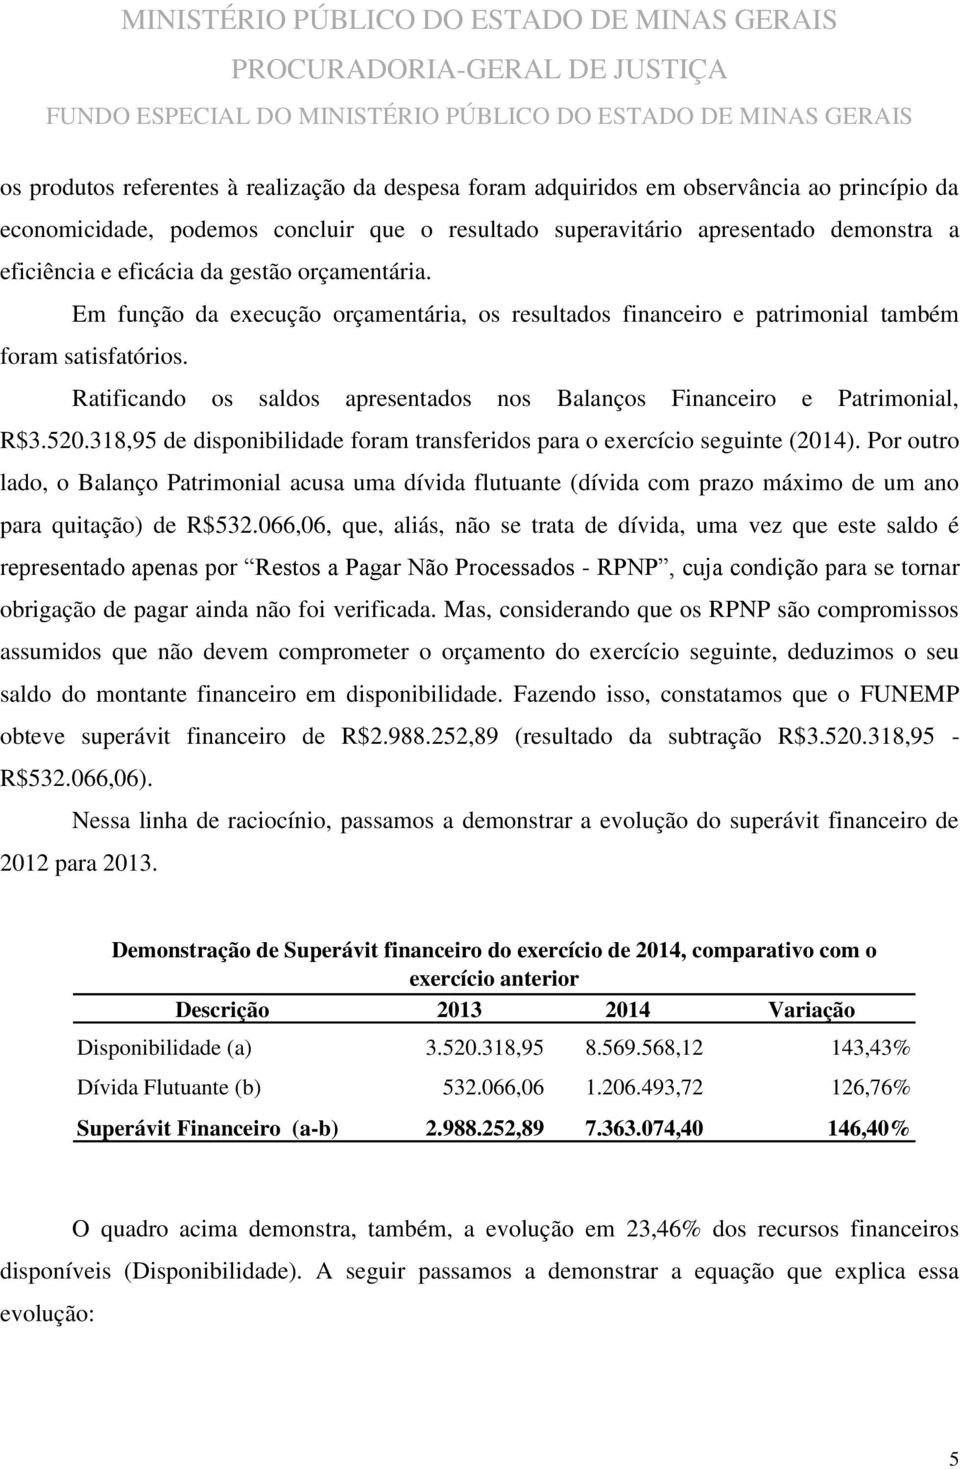 Ratificando os saldos apresentados nos Balanços Financeiro e Patrimonial, R$3.520.318,95 de disponibilidade foram transferidos para o exercício seguinte (2014).